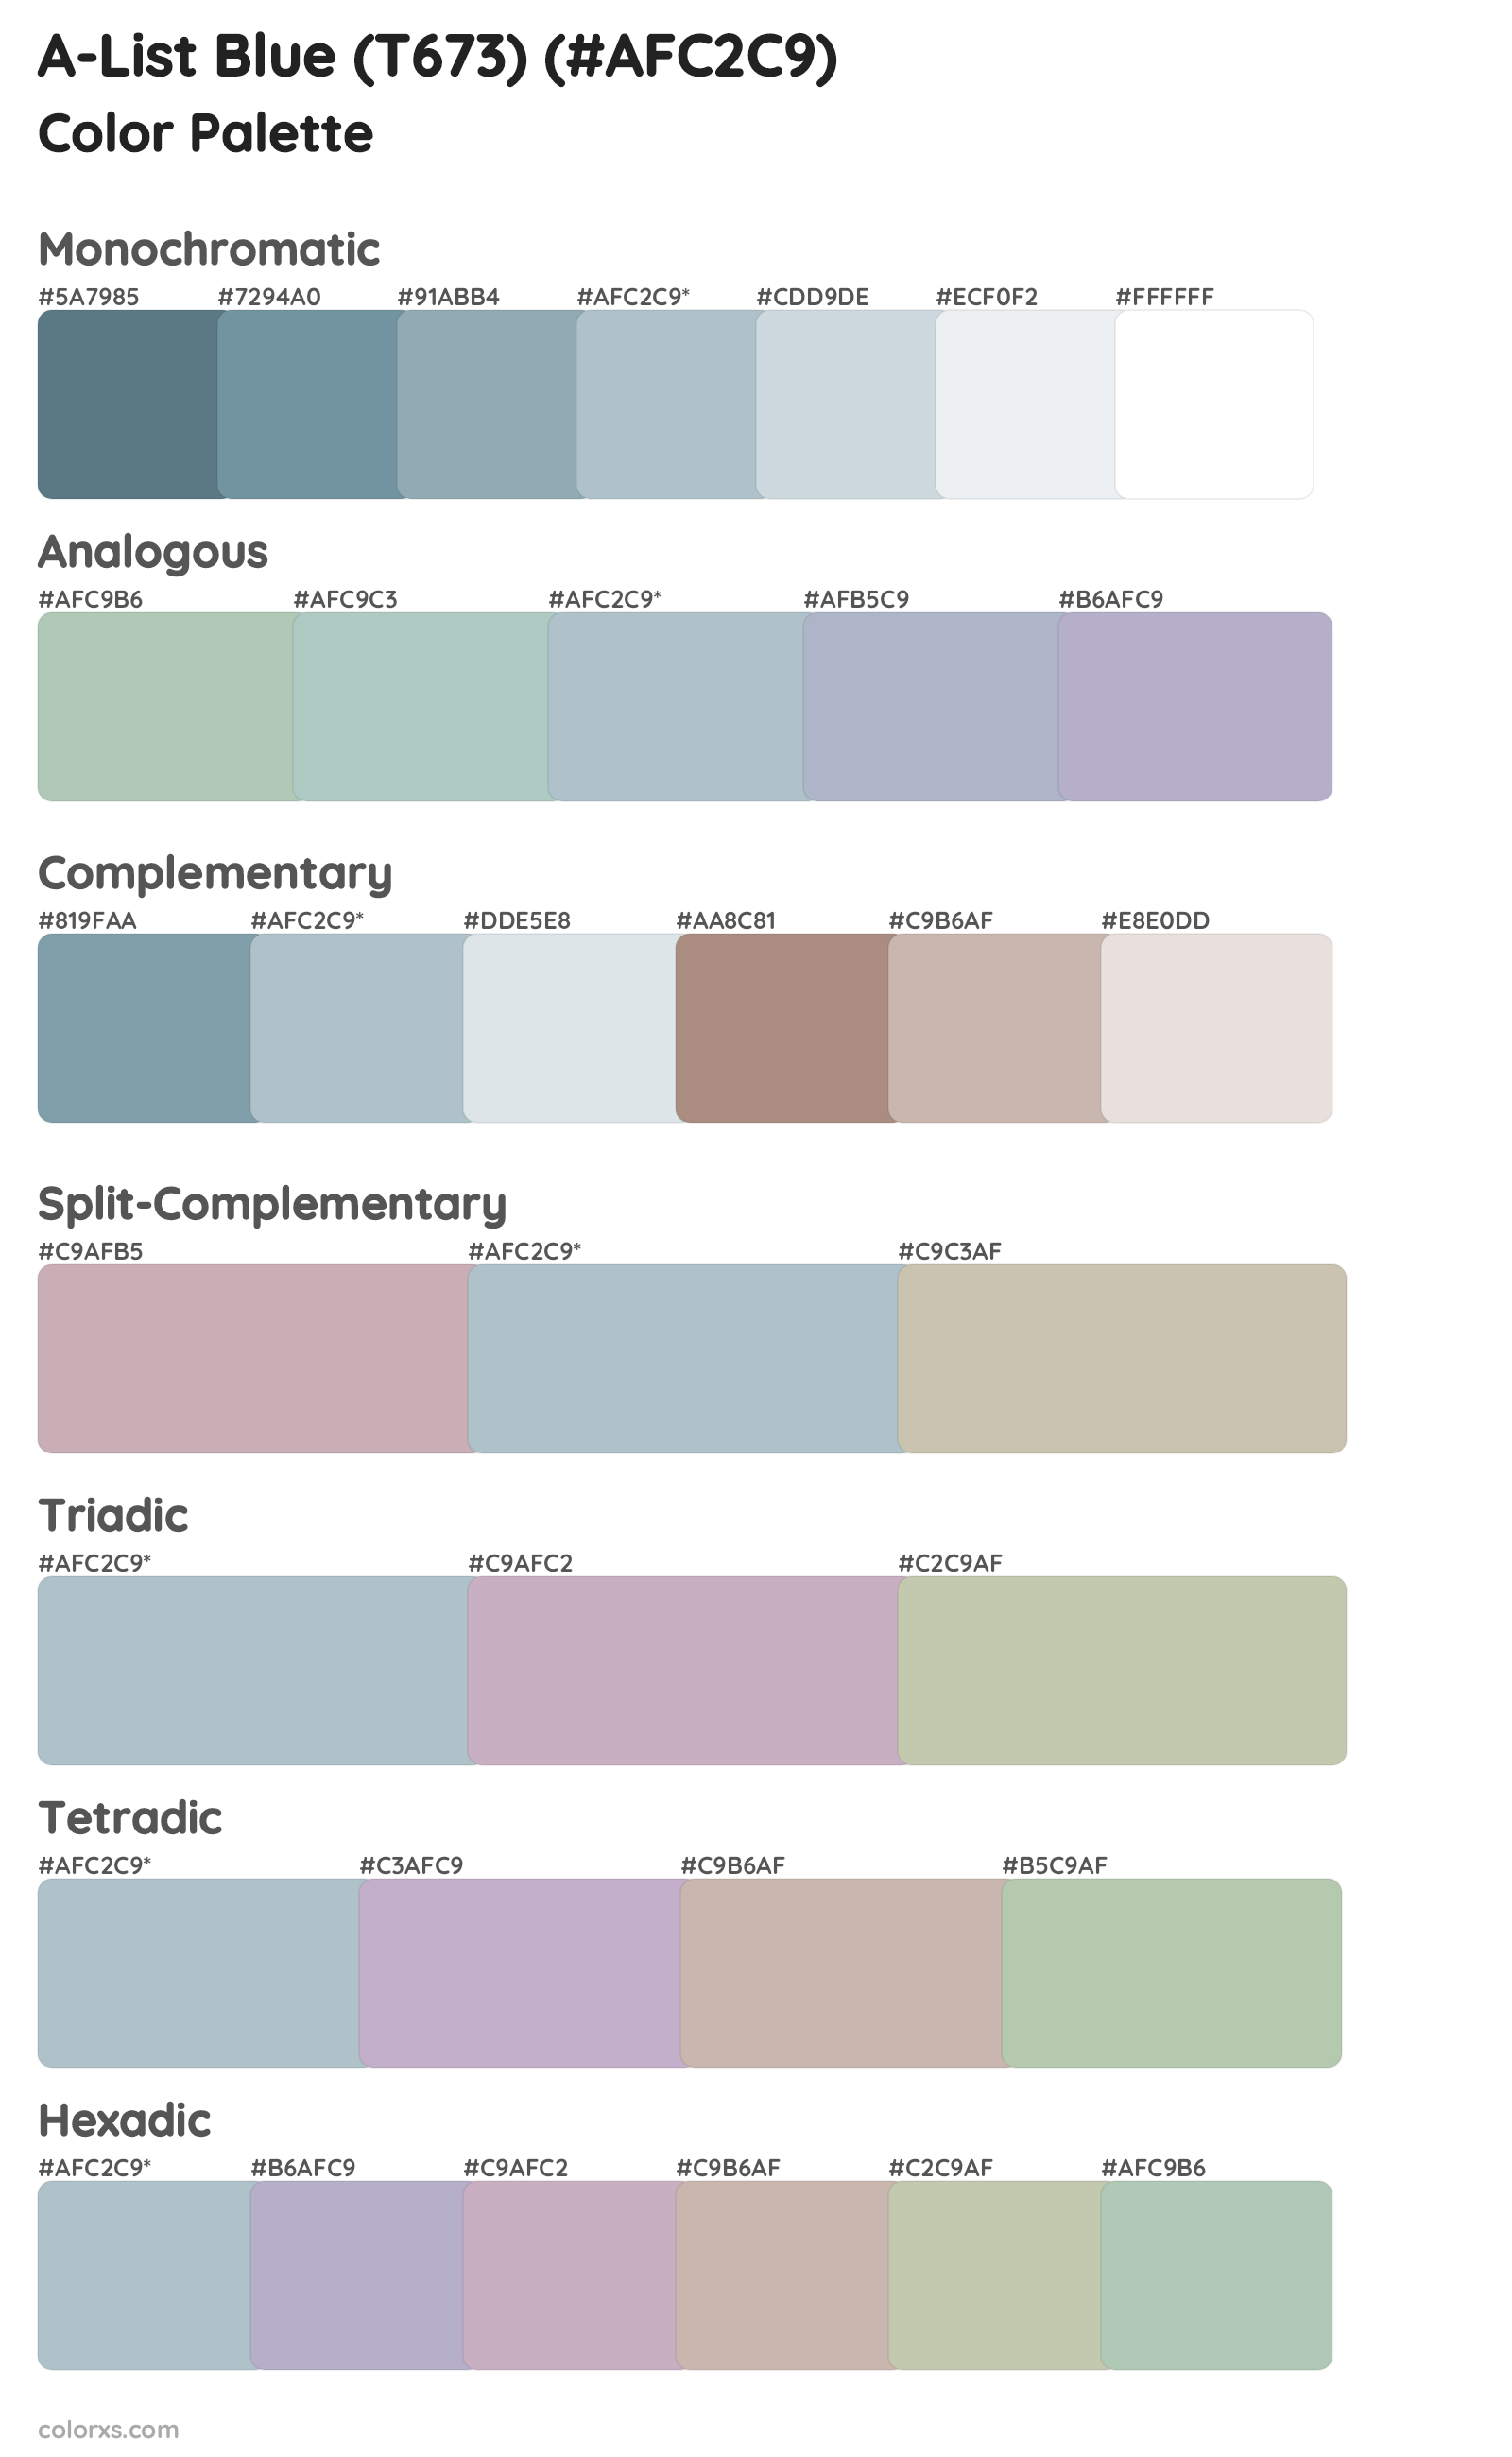 A-List Blue (T673) Color Scheme Palettes